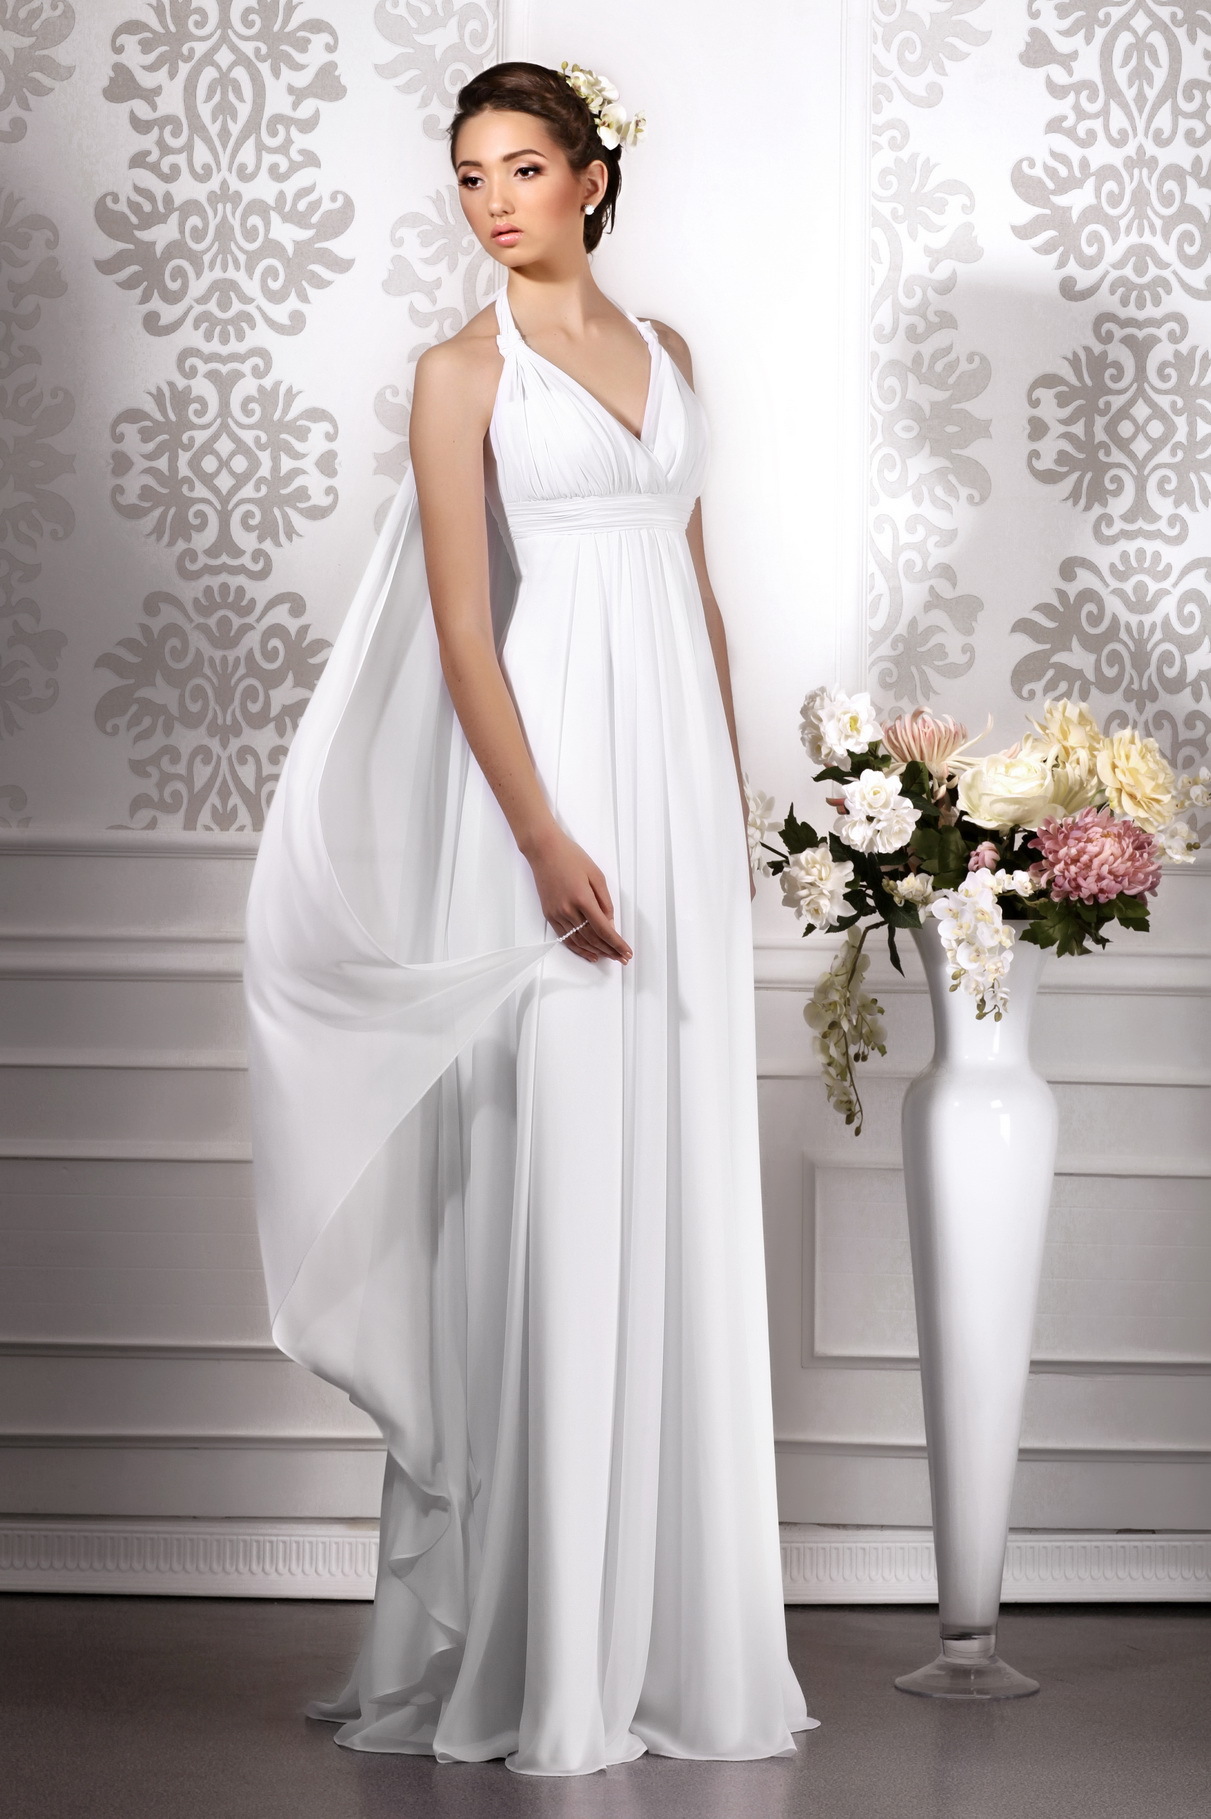 Платья для невесты в греческом стиле